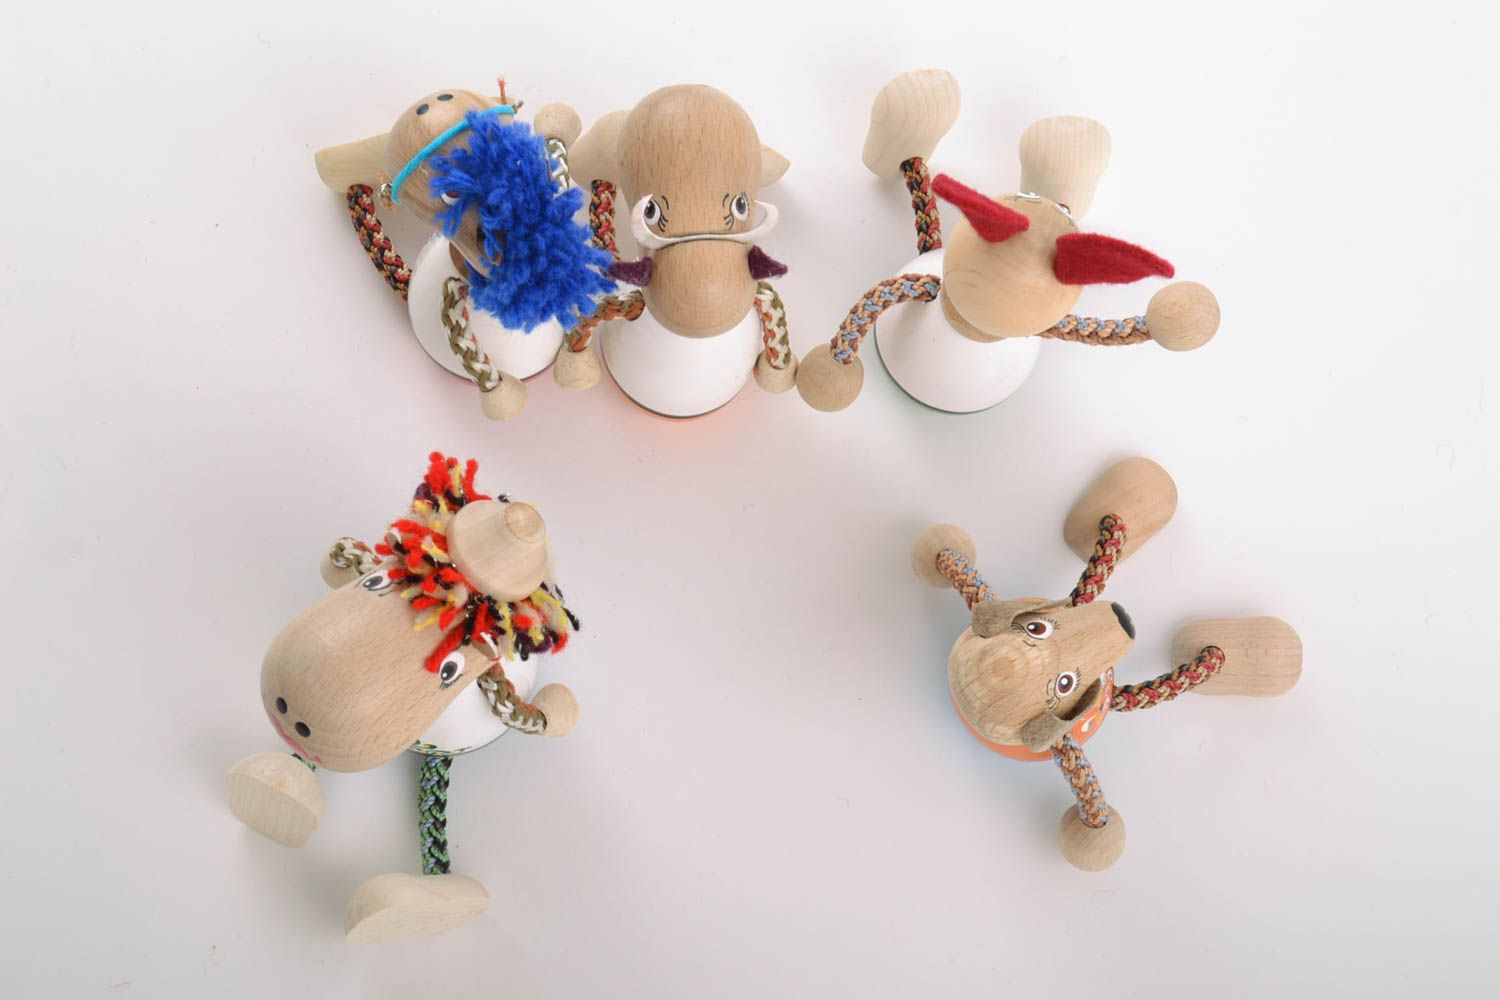 Conjunto de juguetes de madera artesanales pintados con tintes ecológicos 5 piezas animales foto 2